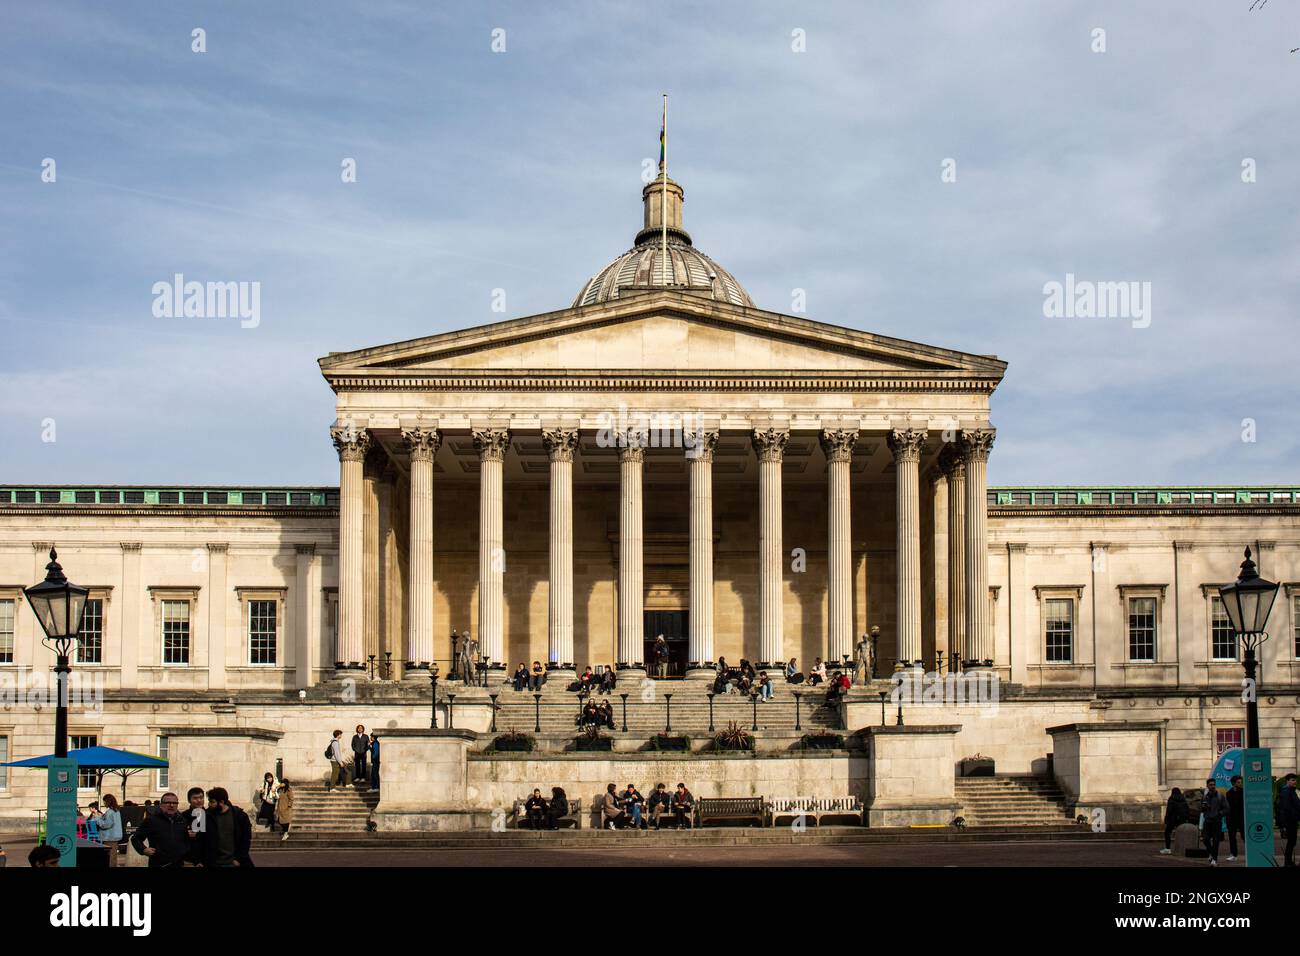 UCL - University College London - bâtiment principal ou façade de bâtiment Wilkins dans le quartier de Bloomsbury, Londres, Angleterre Banque D'Images